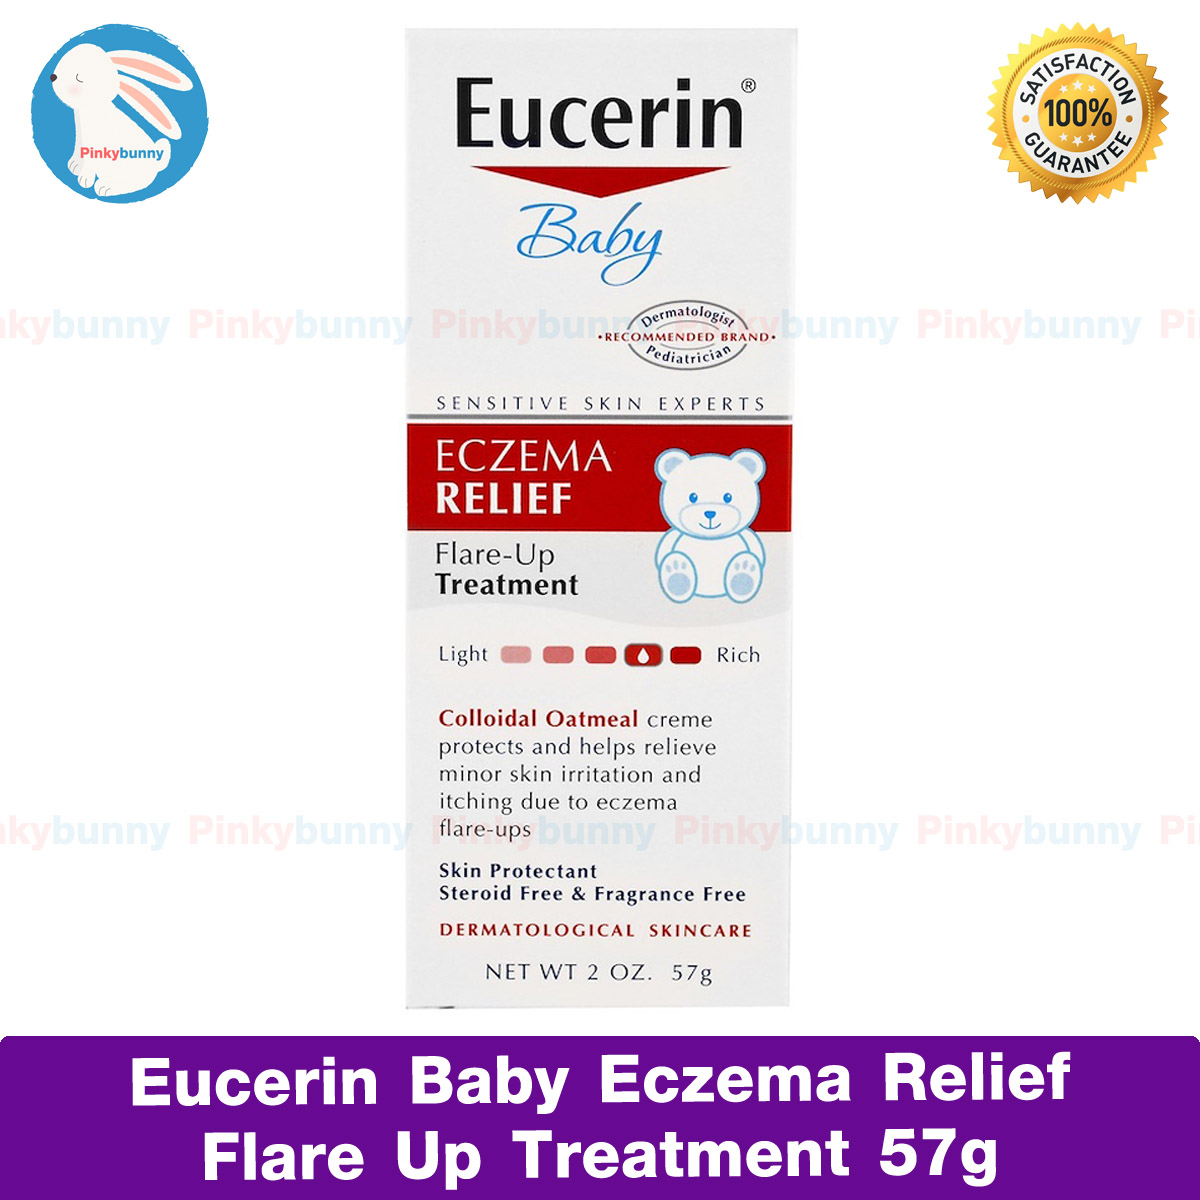 ราคา ยูเซอรีน เบบี้ ครีมบำรุงผิวเด็ก แก้คัน Eucerin, Baby, Eczema Relief, Flare Up Treatment, Fragrance Free, 2 oz (57 g) ครีมบรรเทาอาการผิวภูมิแพ้ ผื่นแพ้ ผื่นคัน